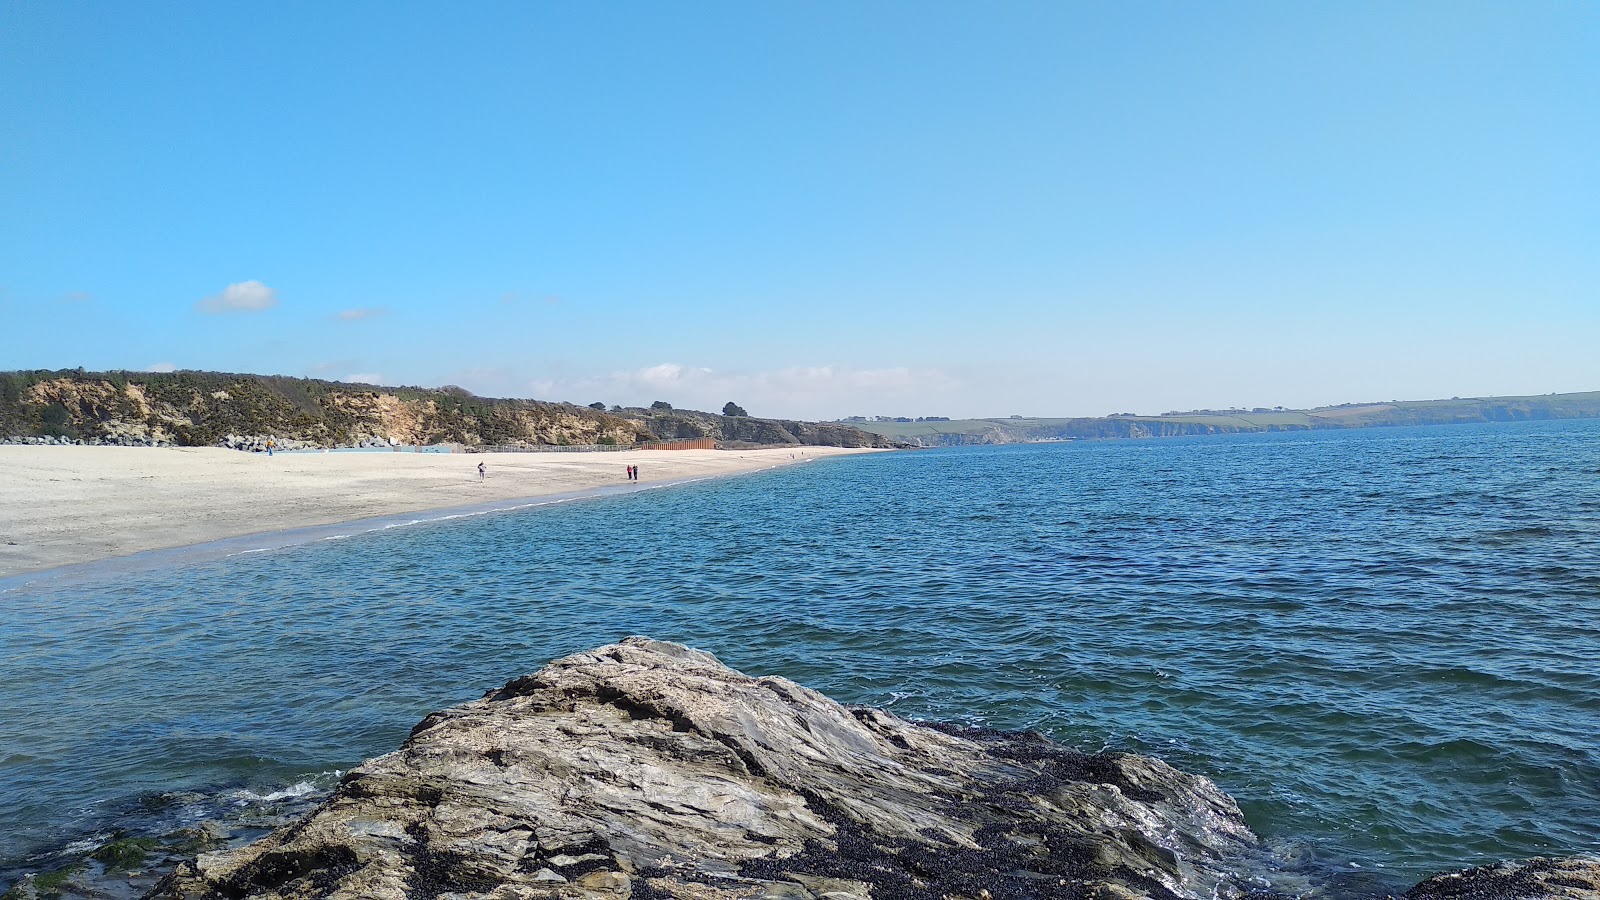 Fotografie cu Carlyon beach - locul popular printre cunoscătorii de relaxare